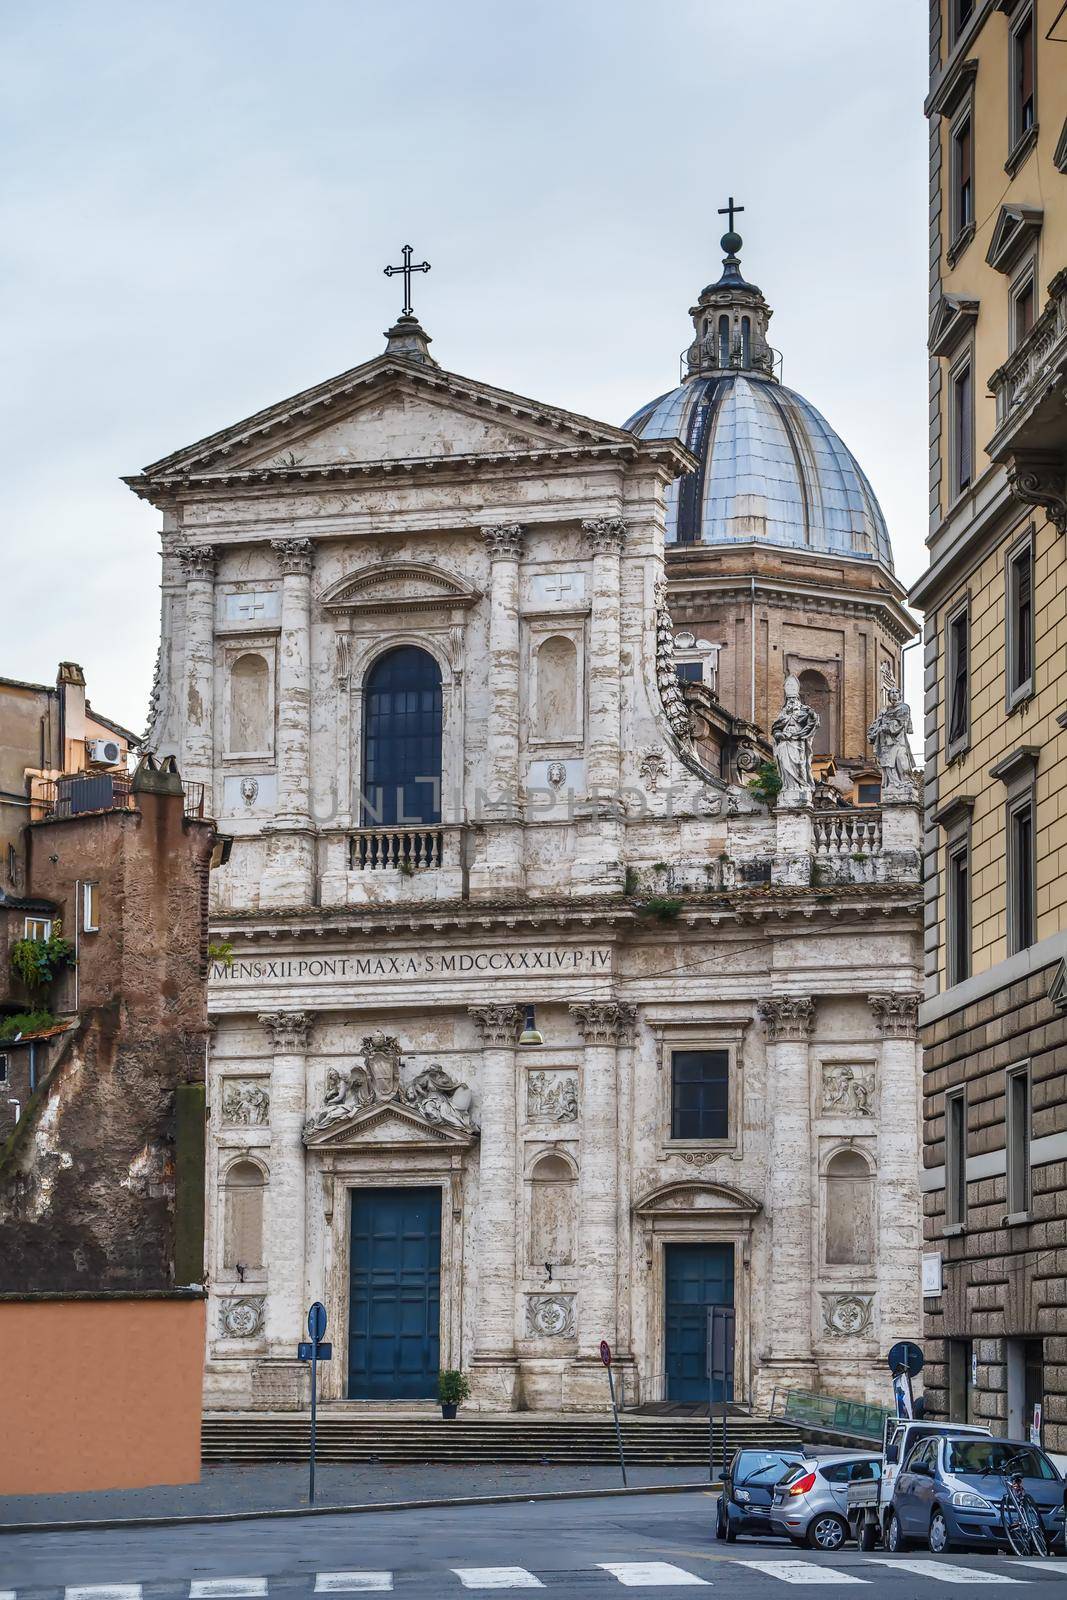 Church San Giovanni dei Fiorentini, Rome, Italy by borisb17